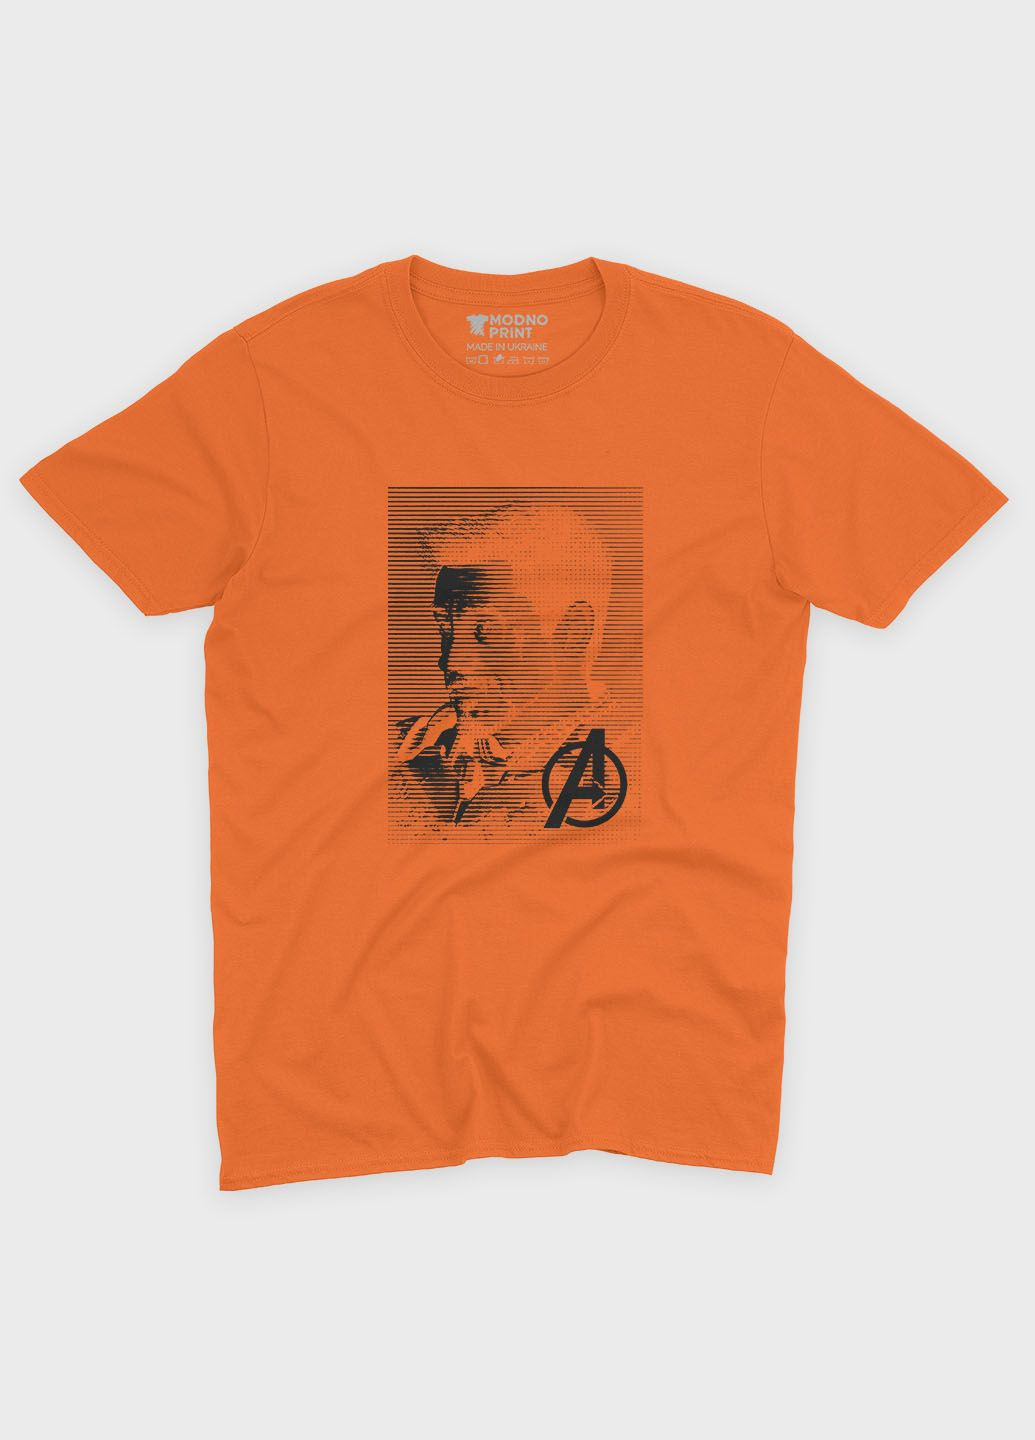 Оранжевая демисезонная футболка для мальчика с принтом супергероя - железный человек (ts001-1-ora-006-016-026-b) Modno